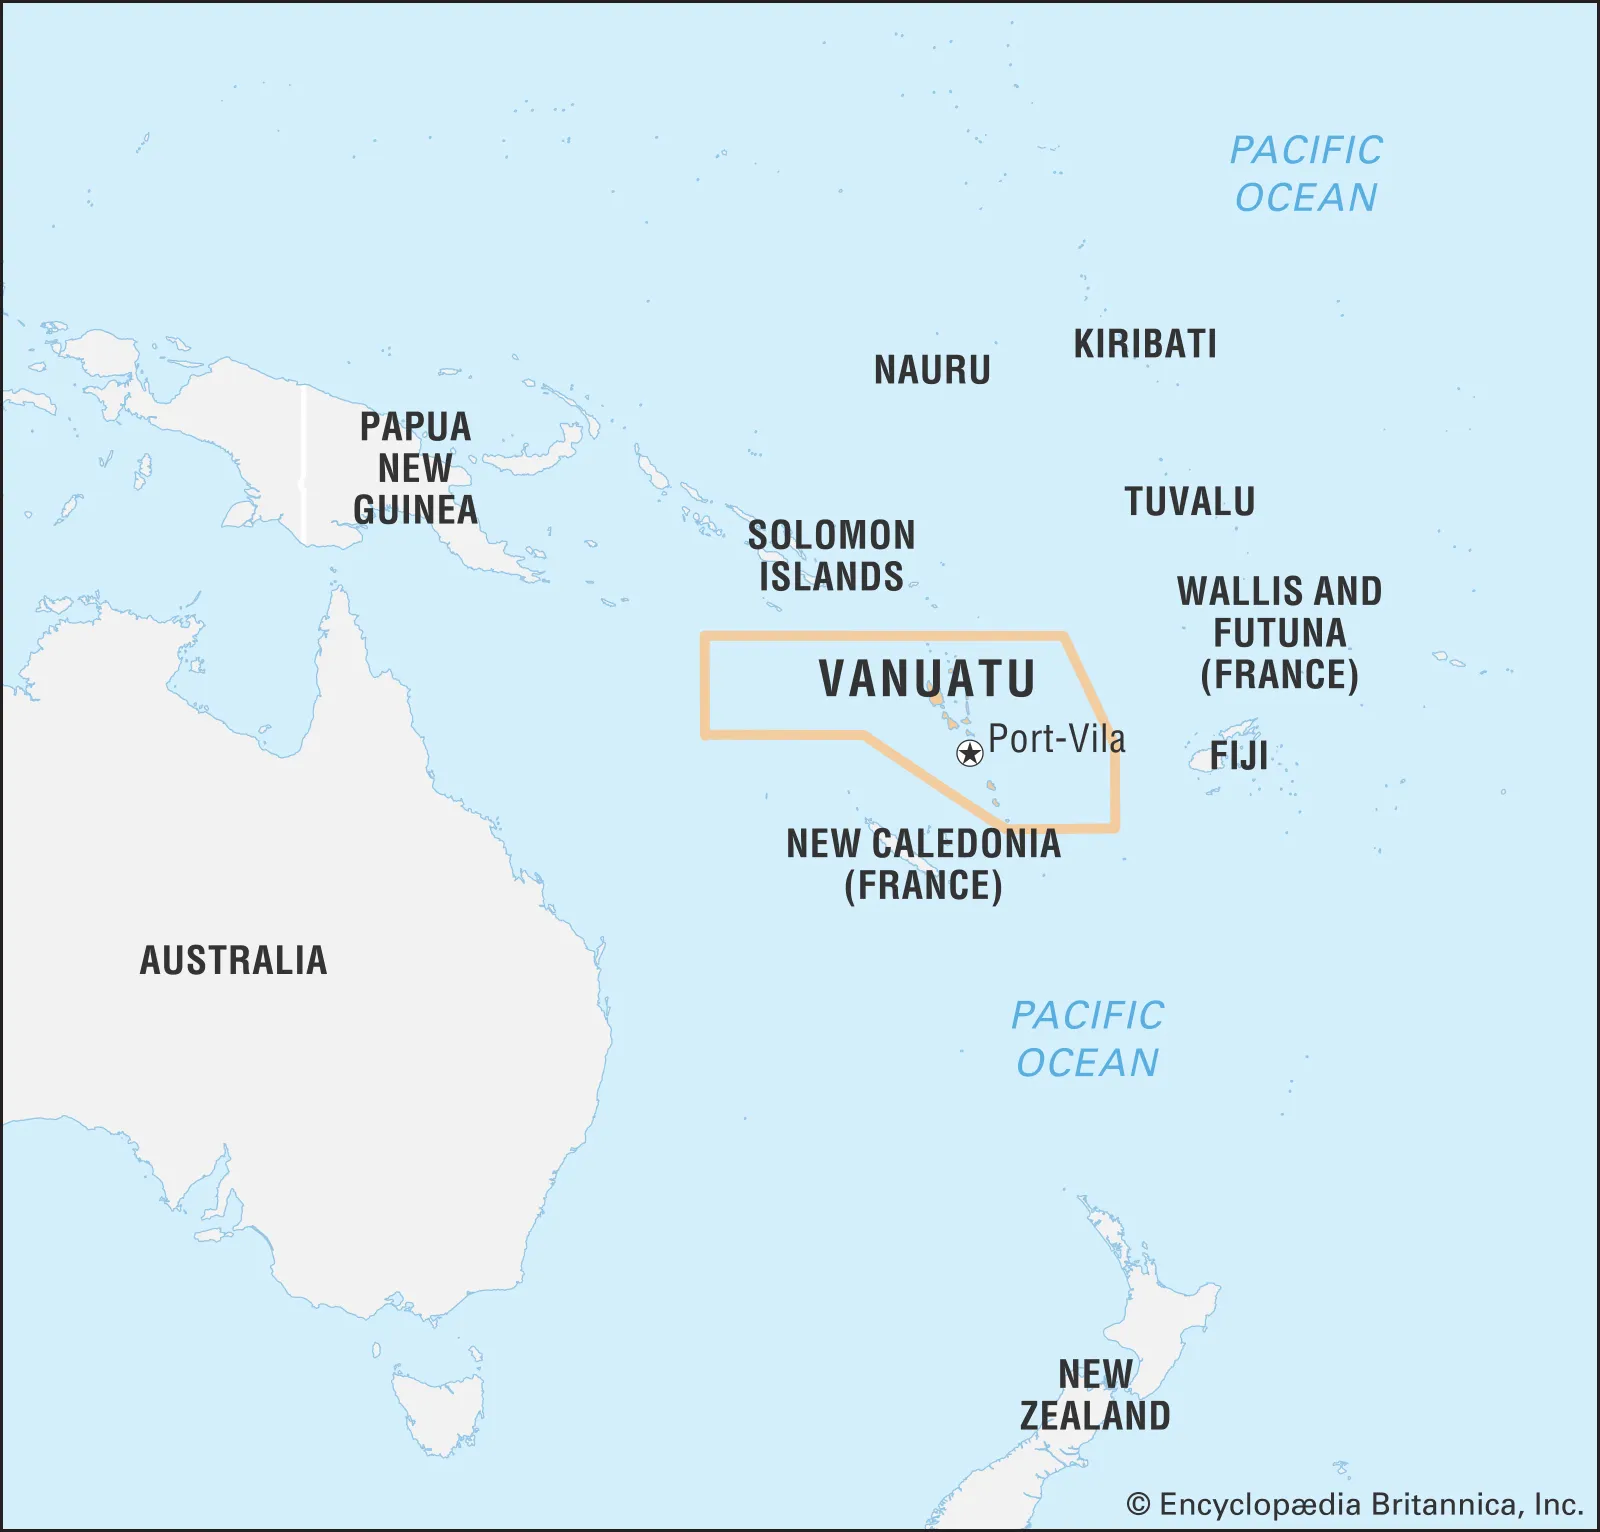 ១. តើធ្វើដូចម្ដេចដើម្បីទទួលបានសញ្ជាតិ Vanuatu?